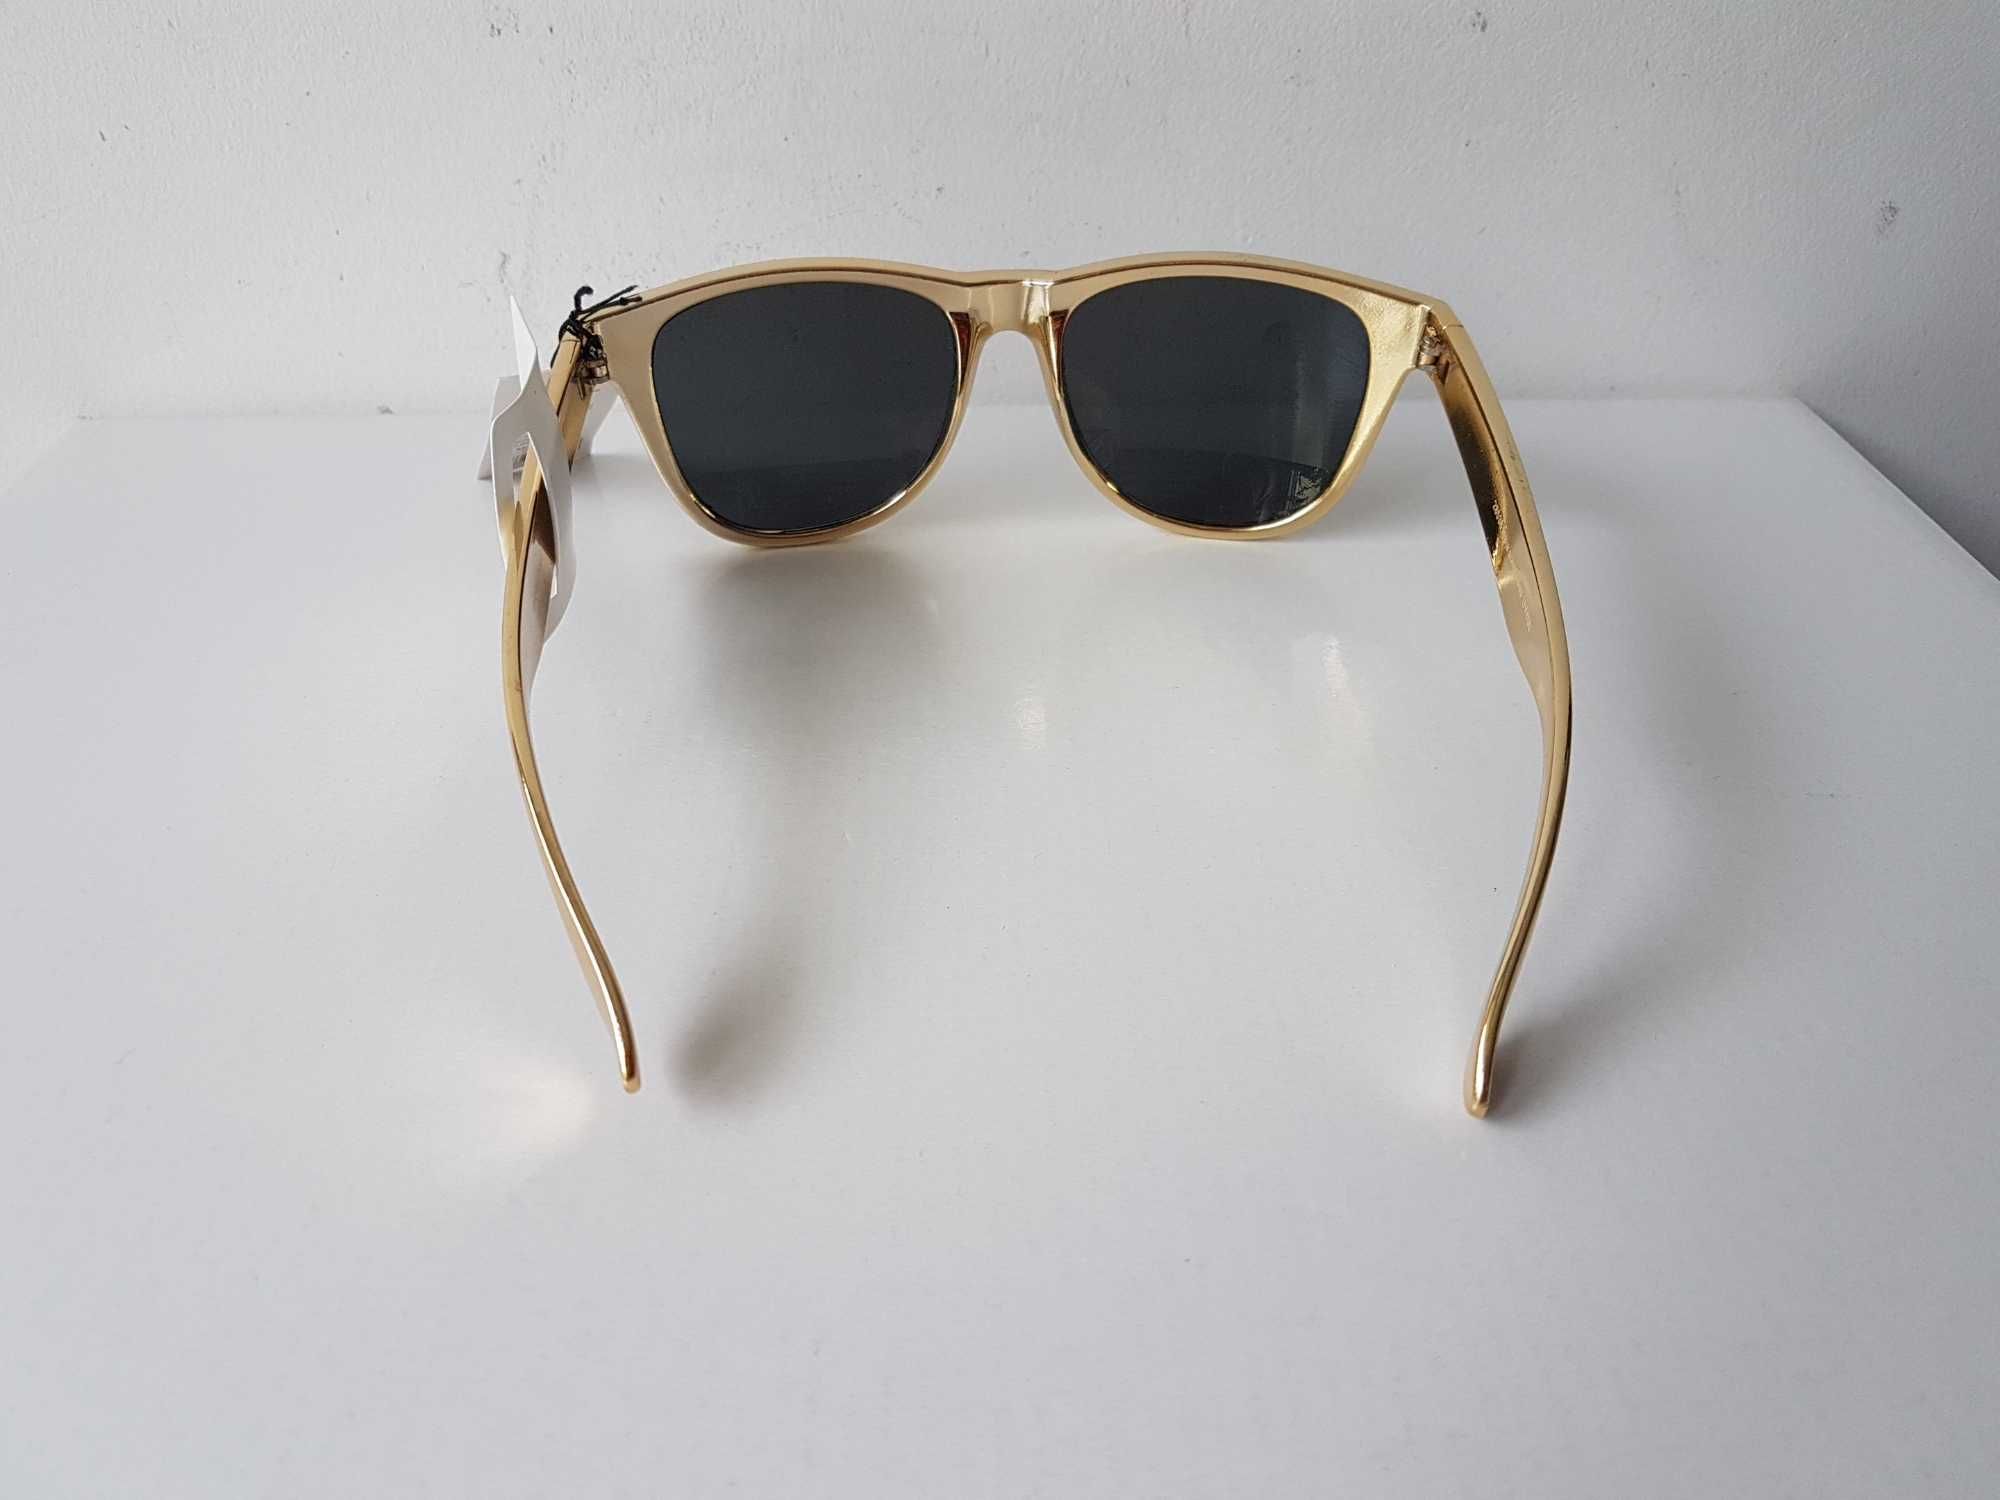 Nowe okulary przeciwsłoneczne złote NERDY Gina Tricot UV400